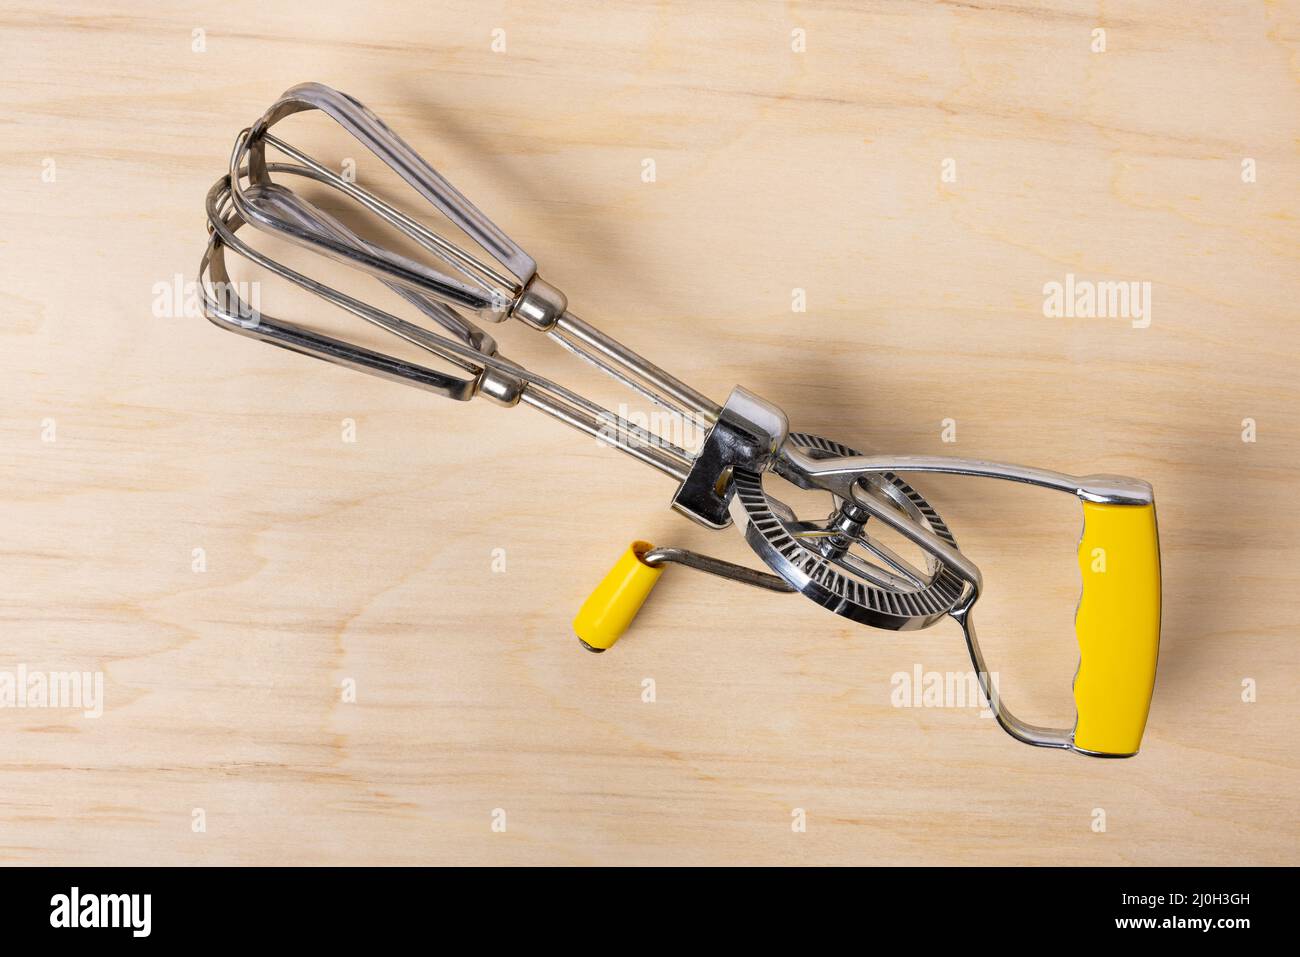 Pair of manual hand egg beater mixer Stock Photo - Alamy